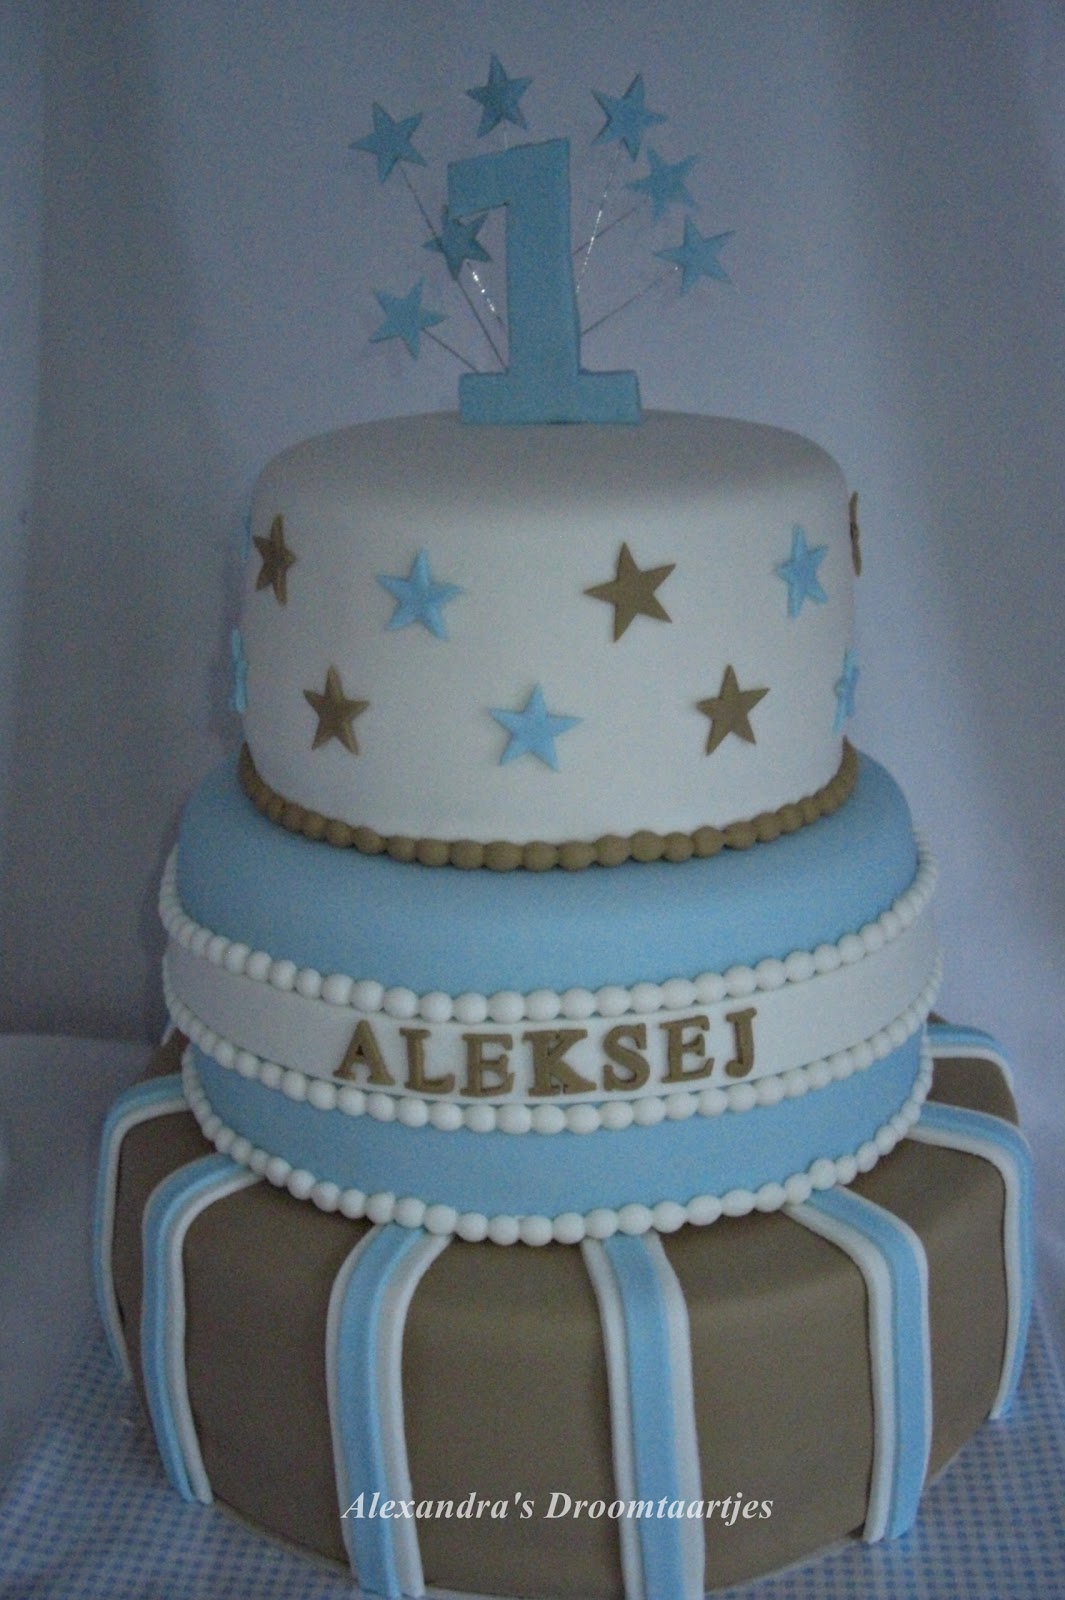 Beste Alexandra's droomtaartjes: Blauw wit bruine taart jongetje 1 jaar WD-26